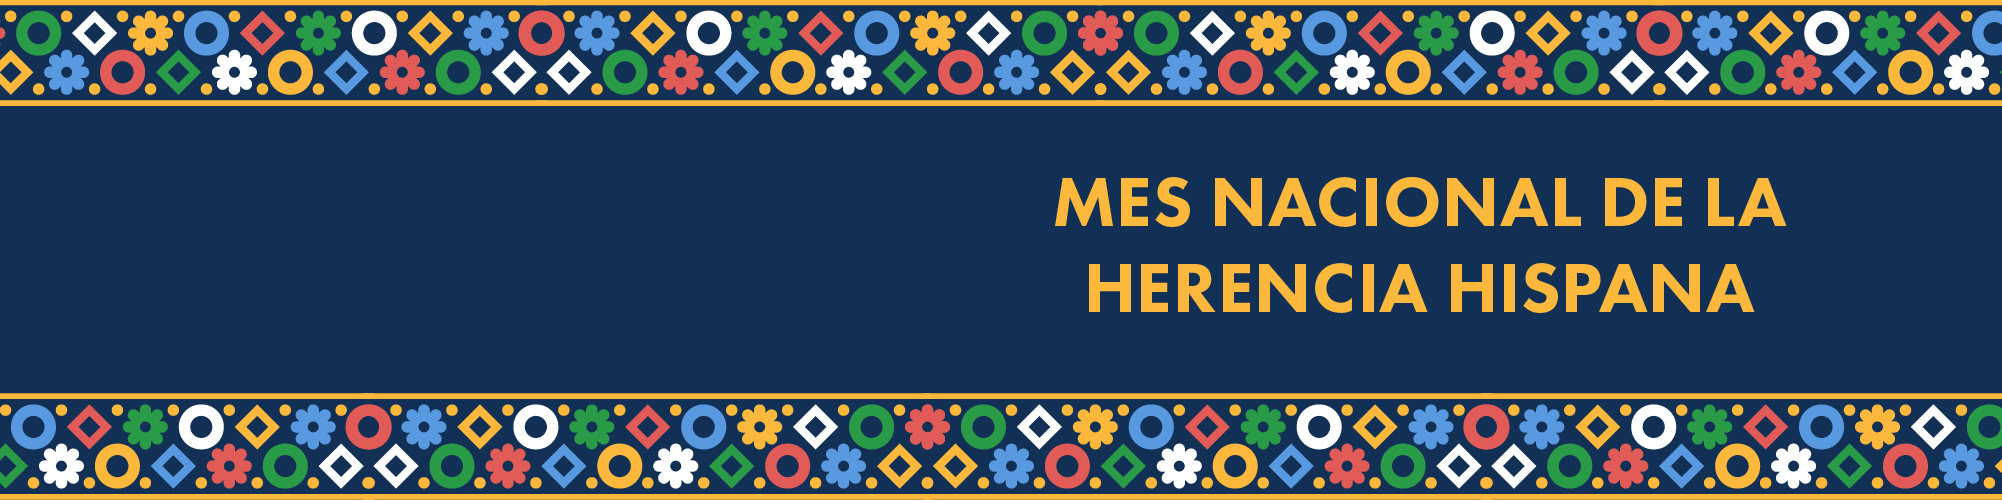 Una gráfica con trasfondo azul y bordes decorativos con flores, diamantes y círculos en azul, amarillo, rojo y verde. Incluye texto que lee: Mes Nacional de la Herencia Hispana.